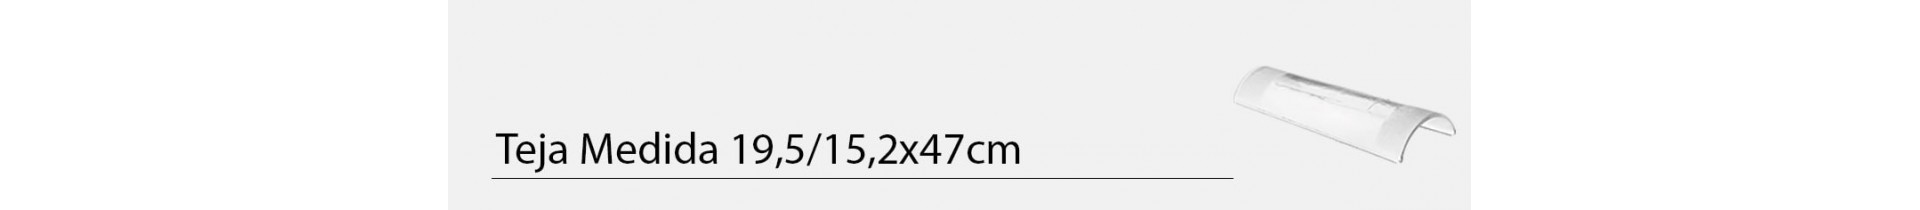 Teja de cristal medida 19,5/15,2x47cm